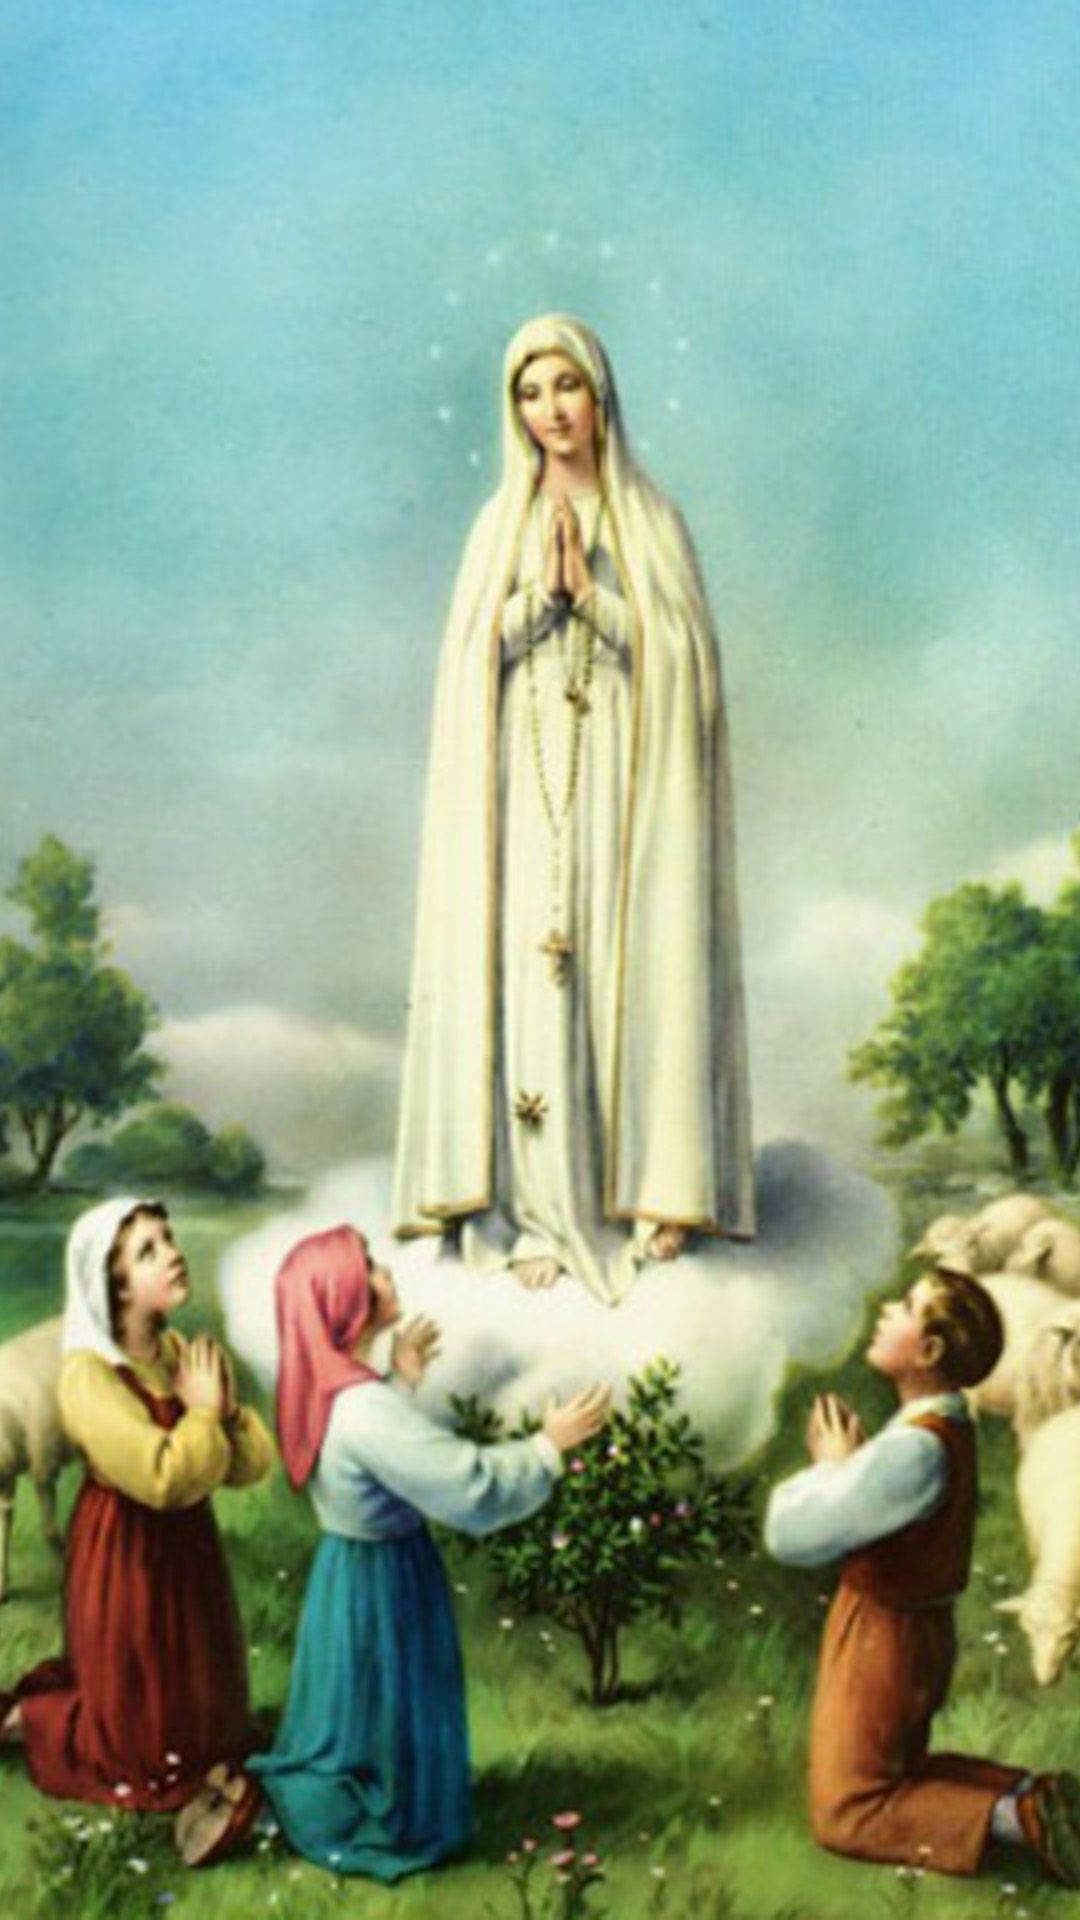 Det Vigin Mary And Children tapet afbilleder en smuk religiøs billed. Wallpaper